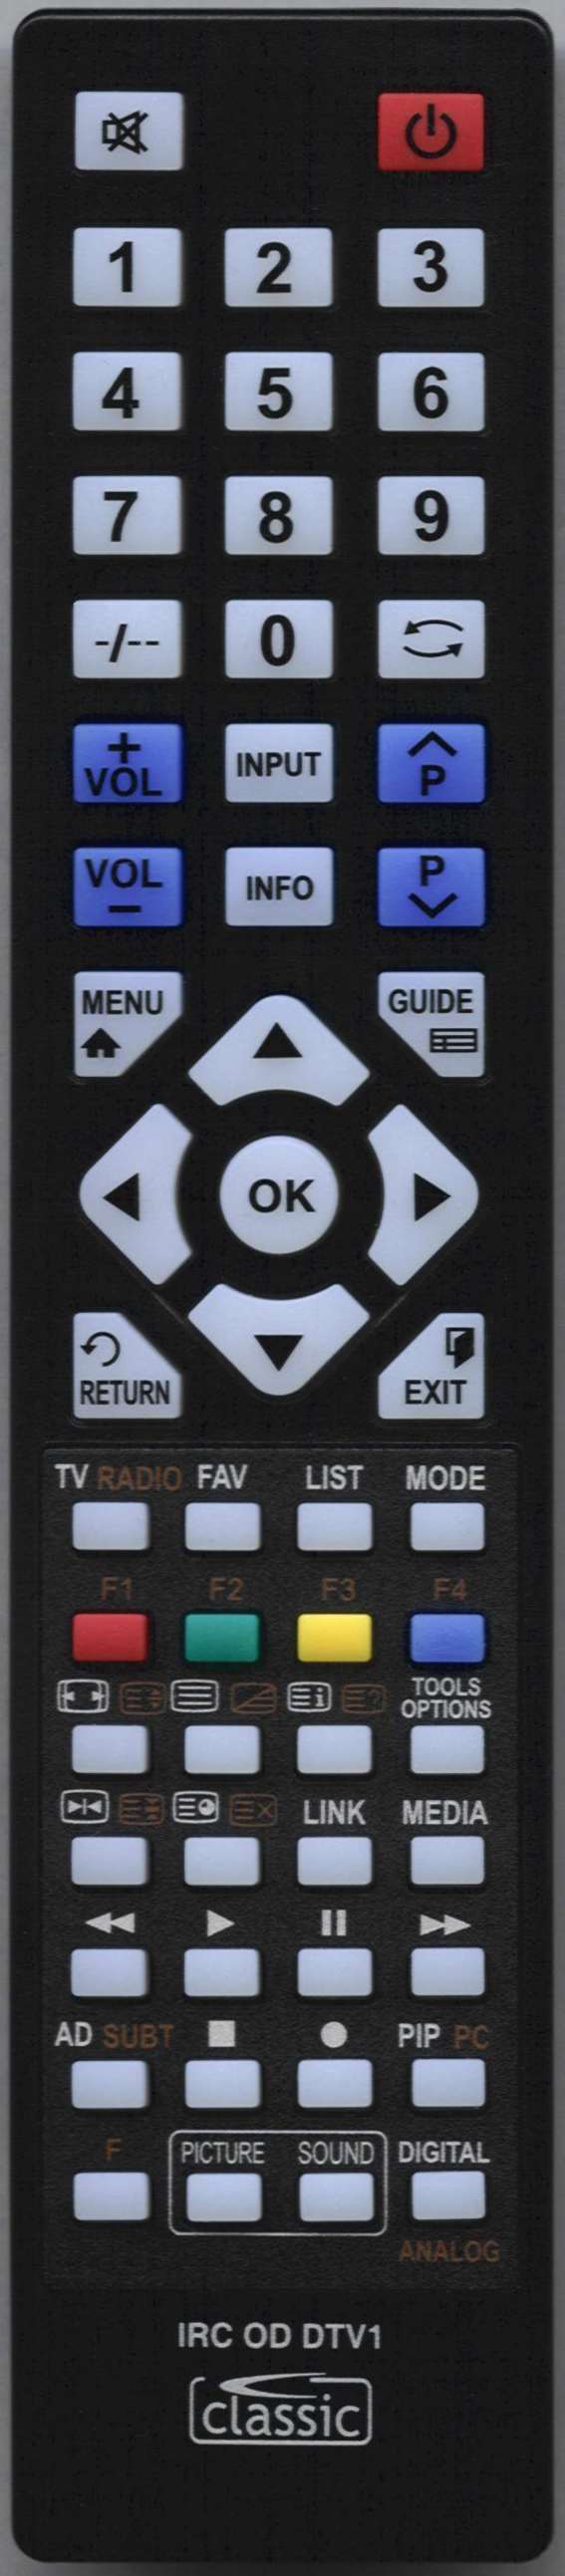 LG 43UN8100 Remote Control Alternative